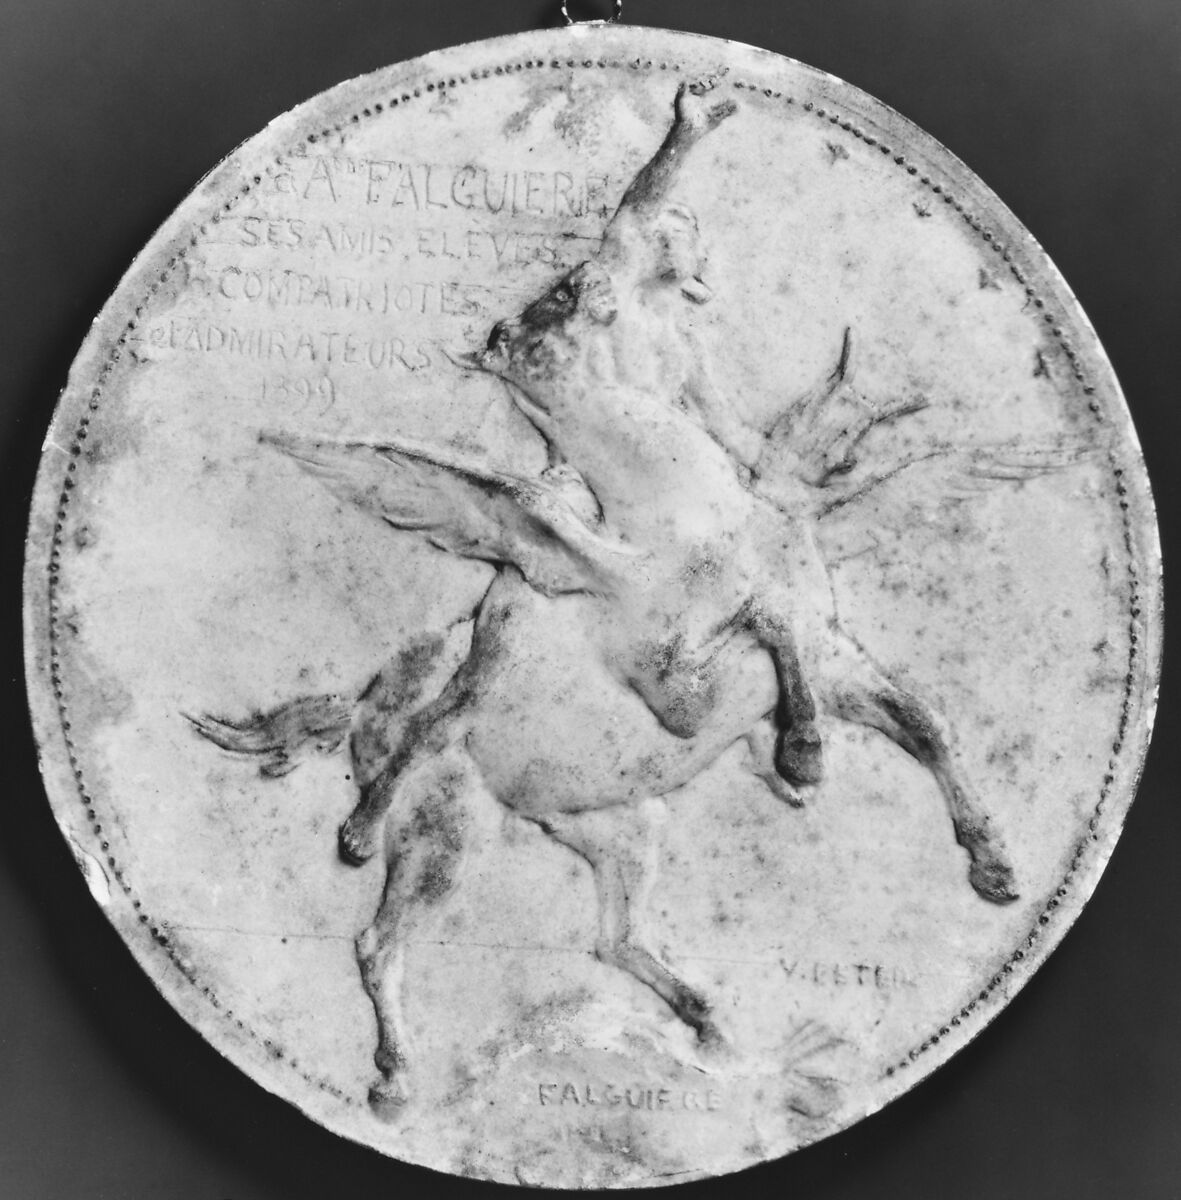 Alexandre Falguière (1831–1900), Medalist: Victor Peter (French, Paris 1840–1918 Paris), Plaster proof, French 